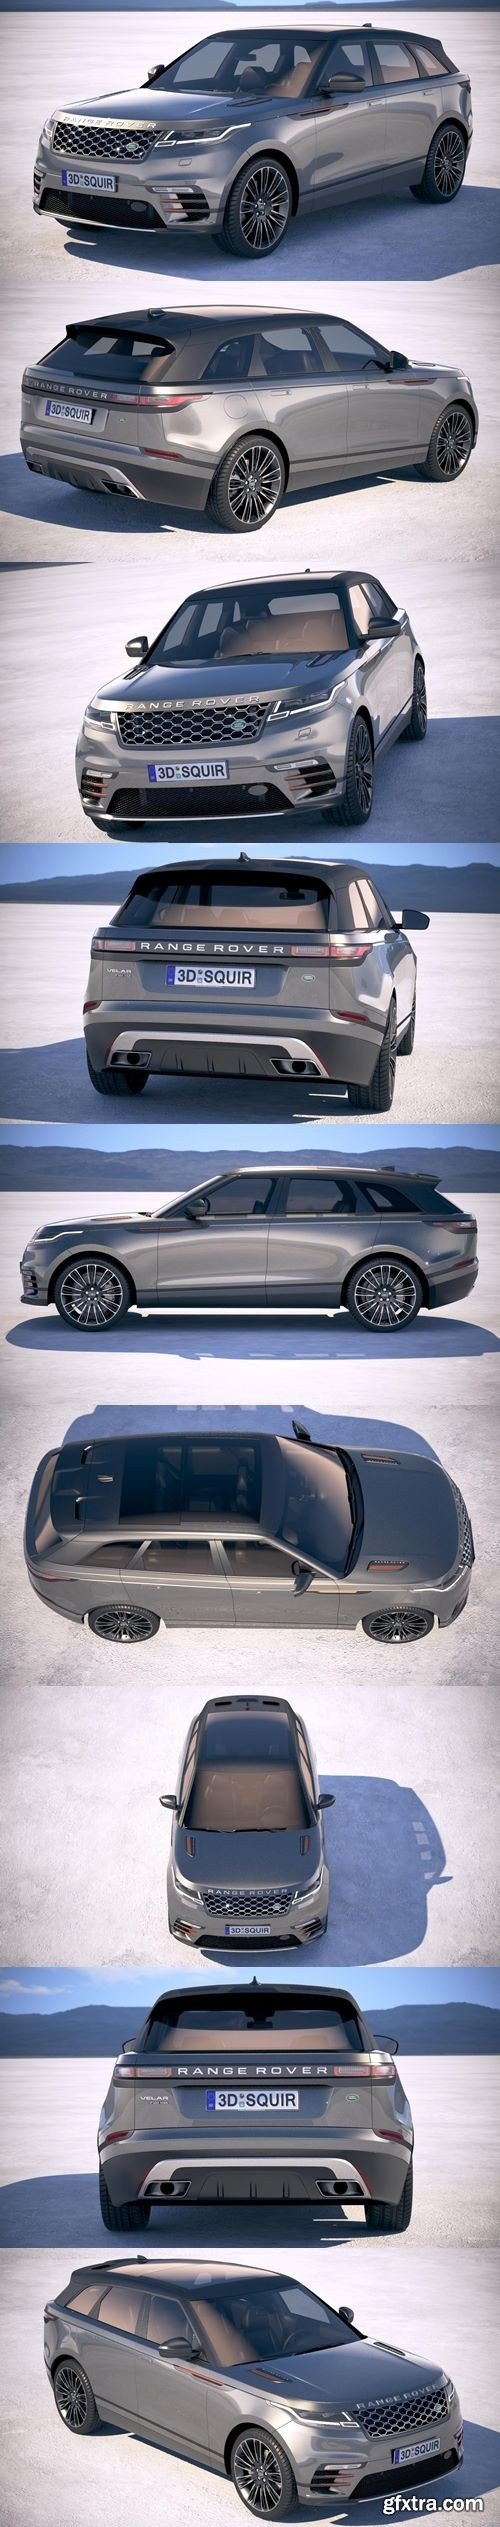 Land Rover Range Rover Velar 2018 3D Model